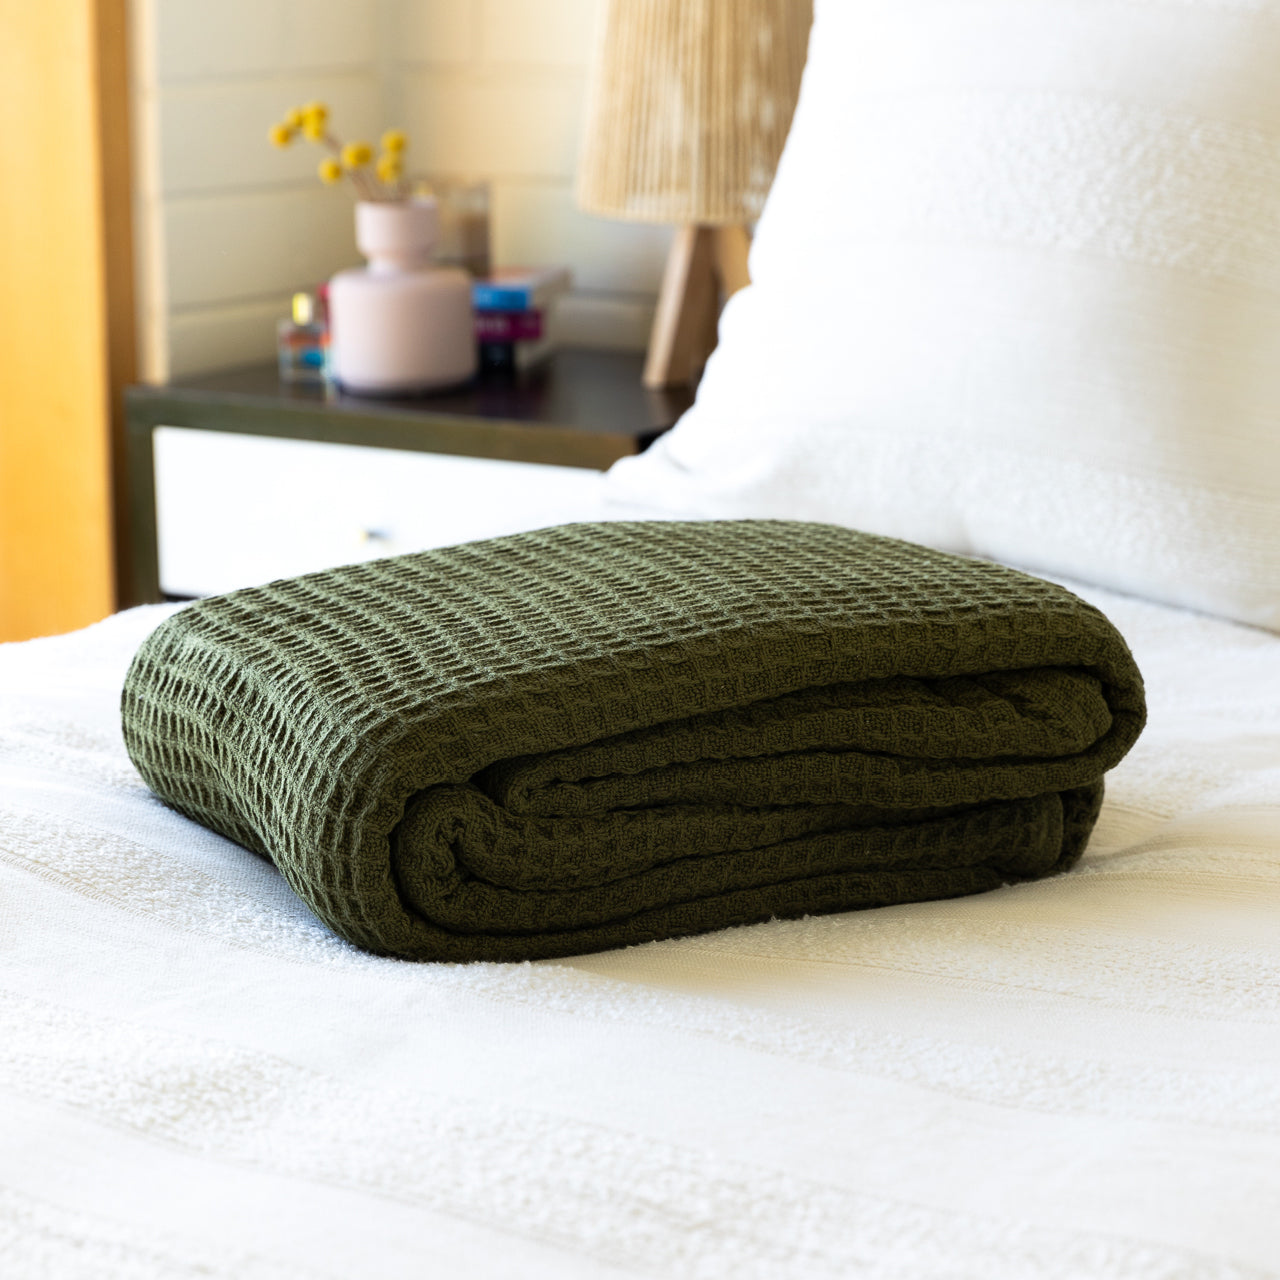 Cotton Blanket Olive folded up on bed